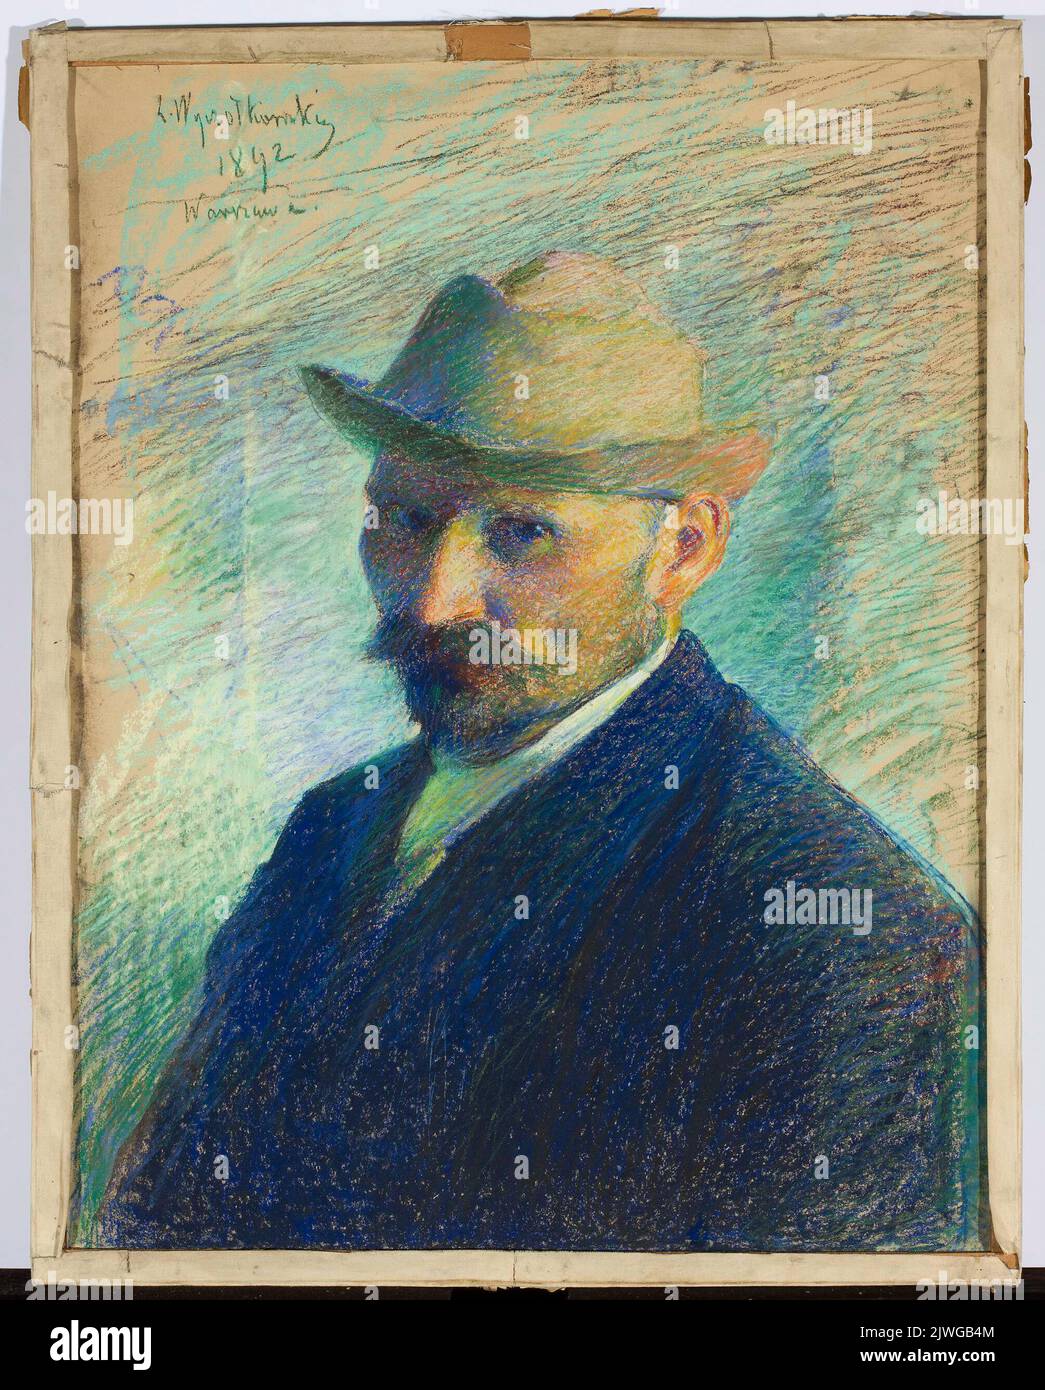 Self-portrait. Wyczółkowski, Leon (1852-1936), painter Stock Photo